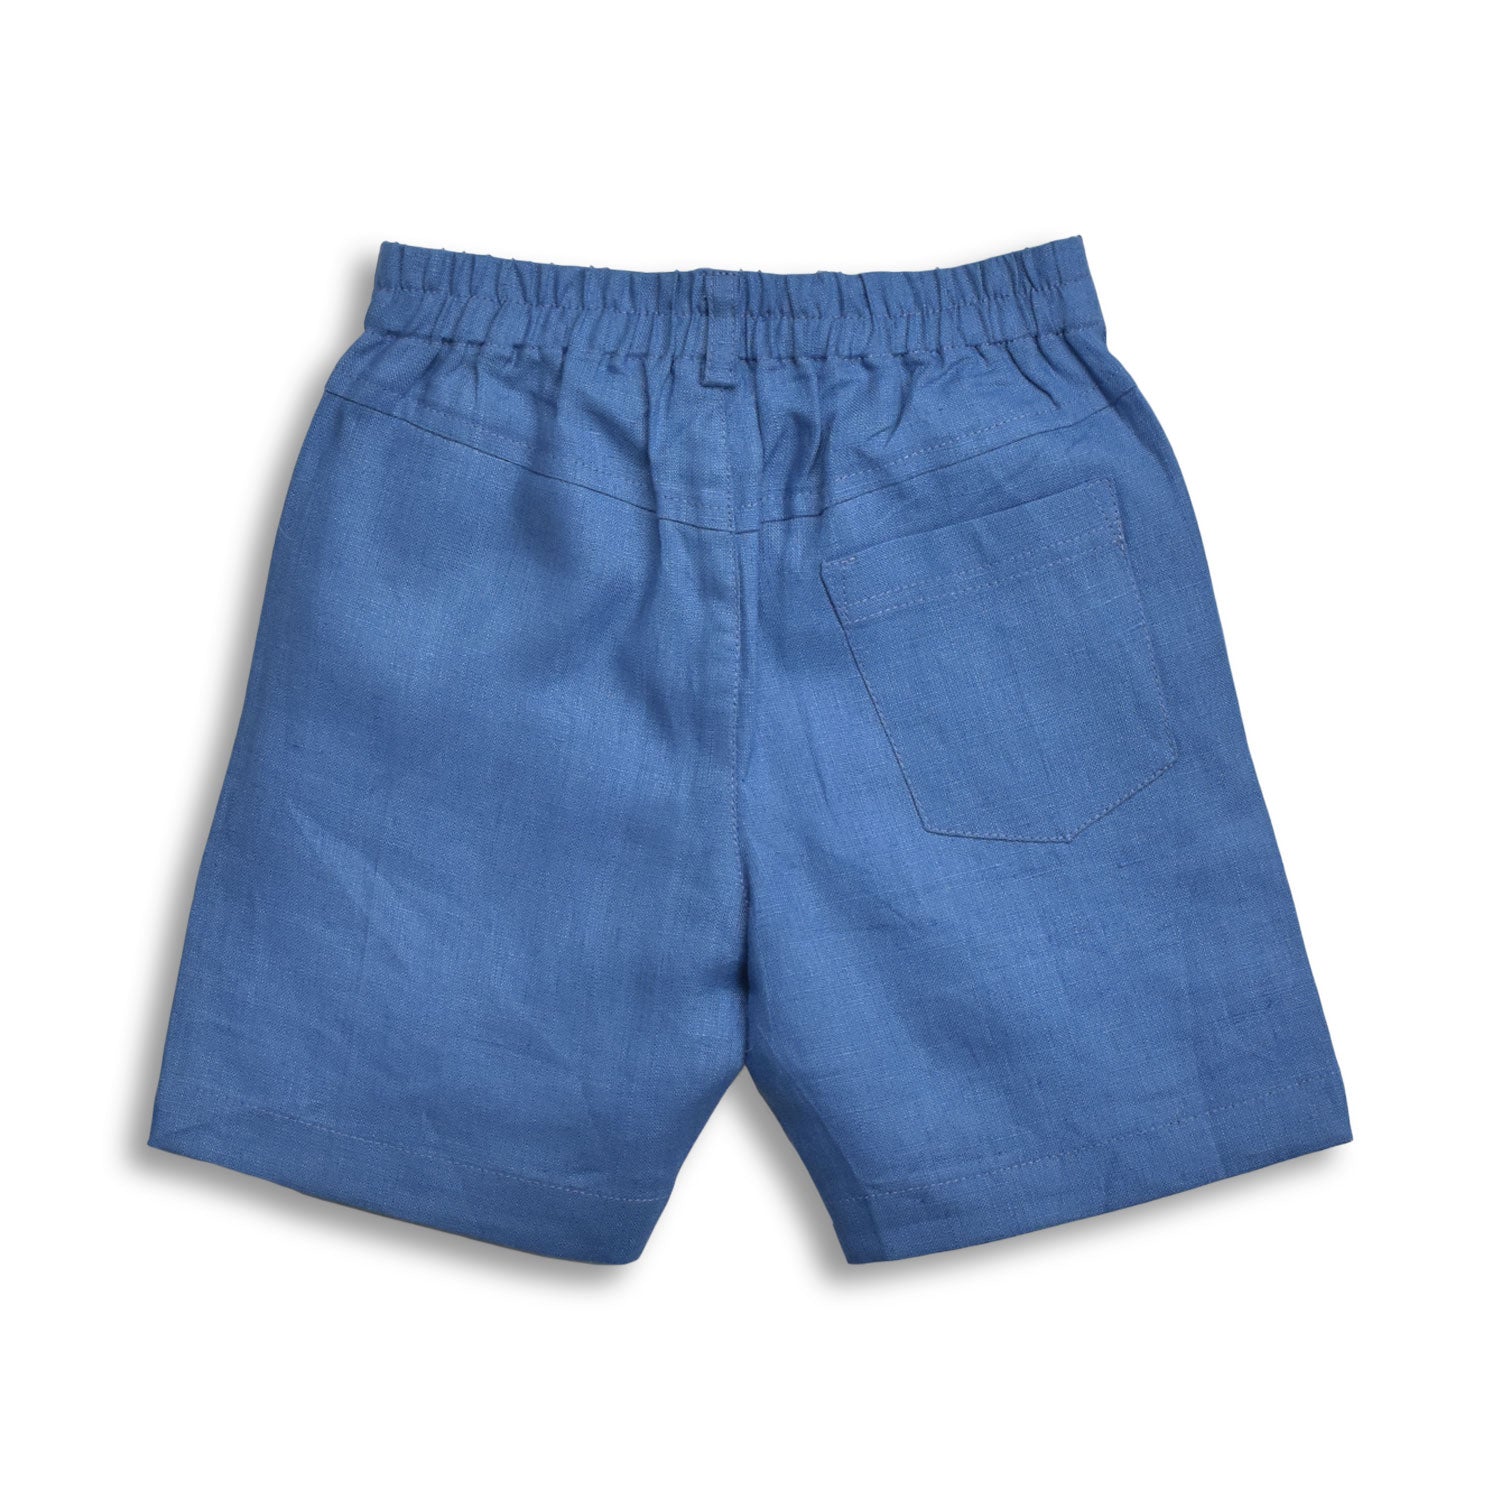 Tiny Twig Boys Dress Shorts - Deep Blue Linen